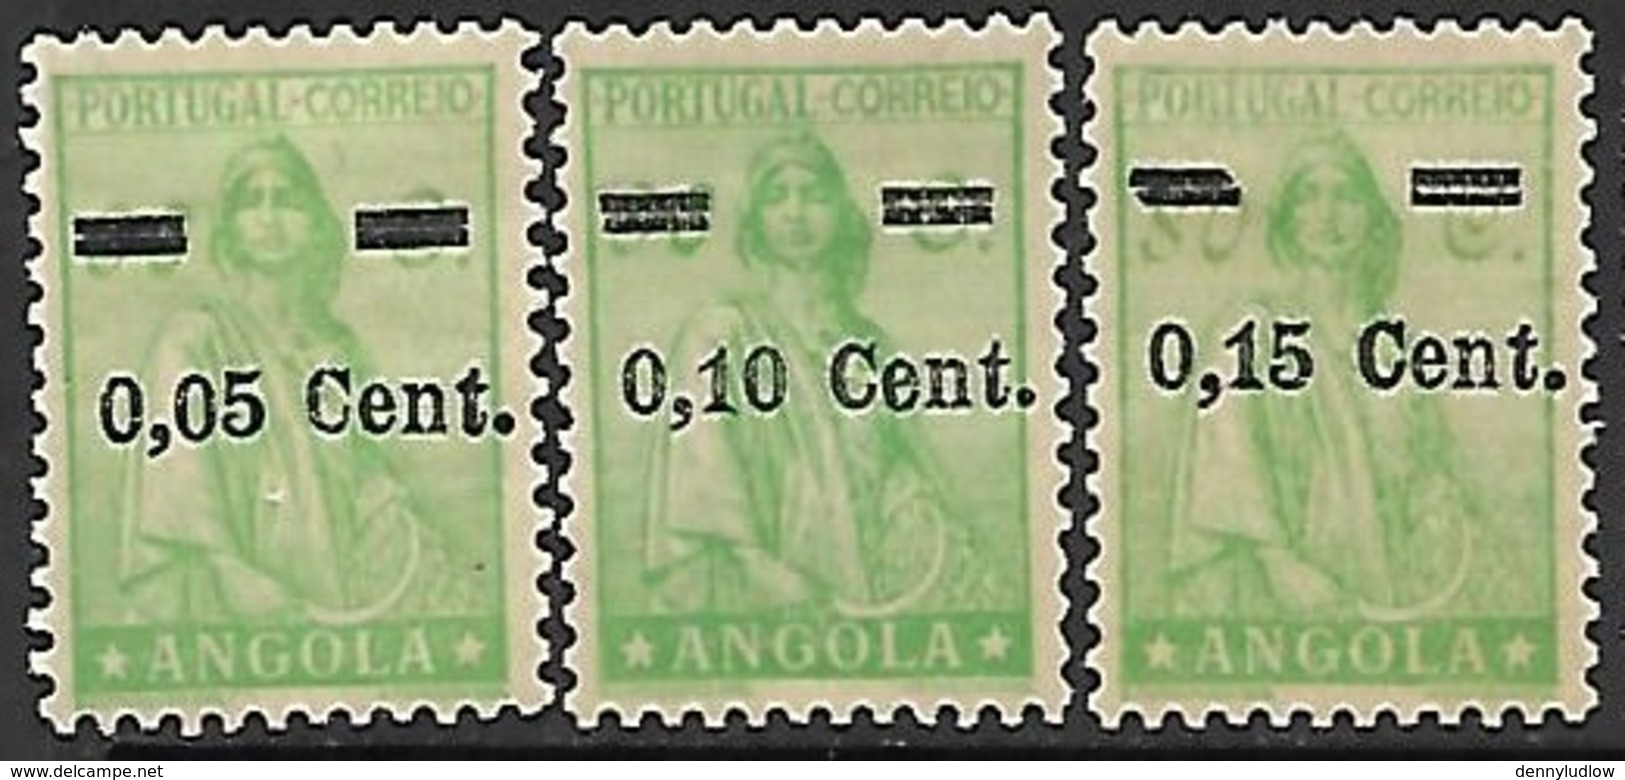 Portugese Angola   1938   Sc#271-3  Surcharges Set  MH*   2016 Scott Value $5.50 - Angola